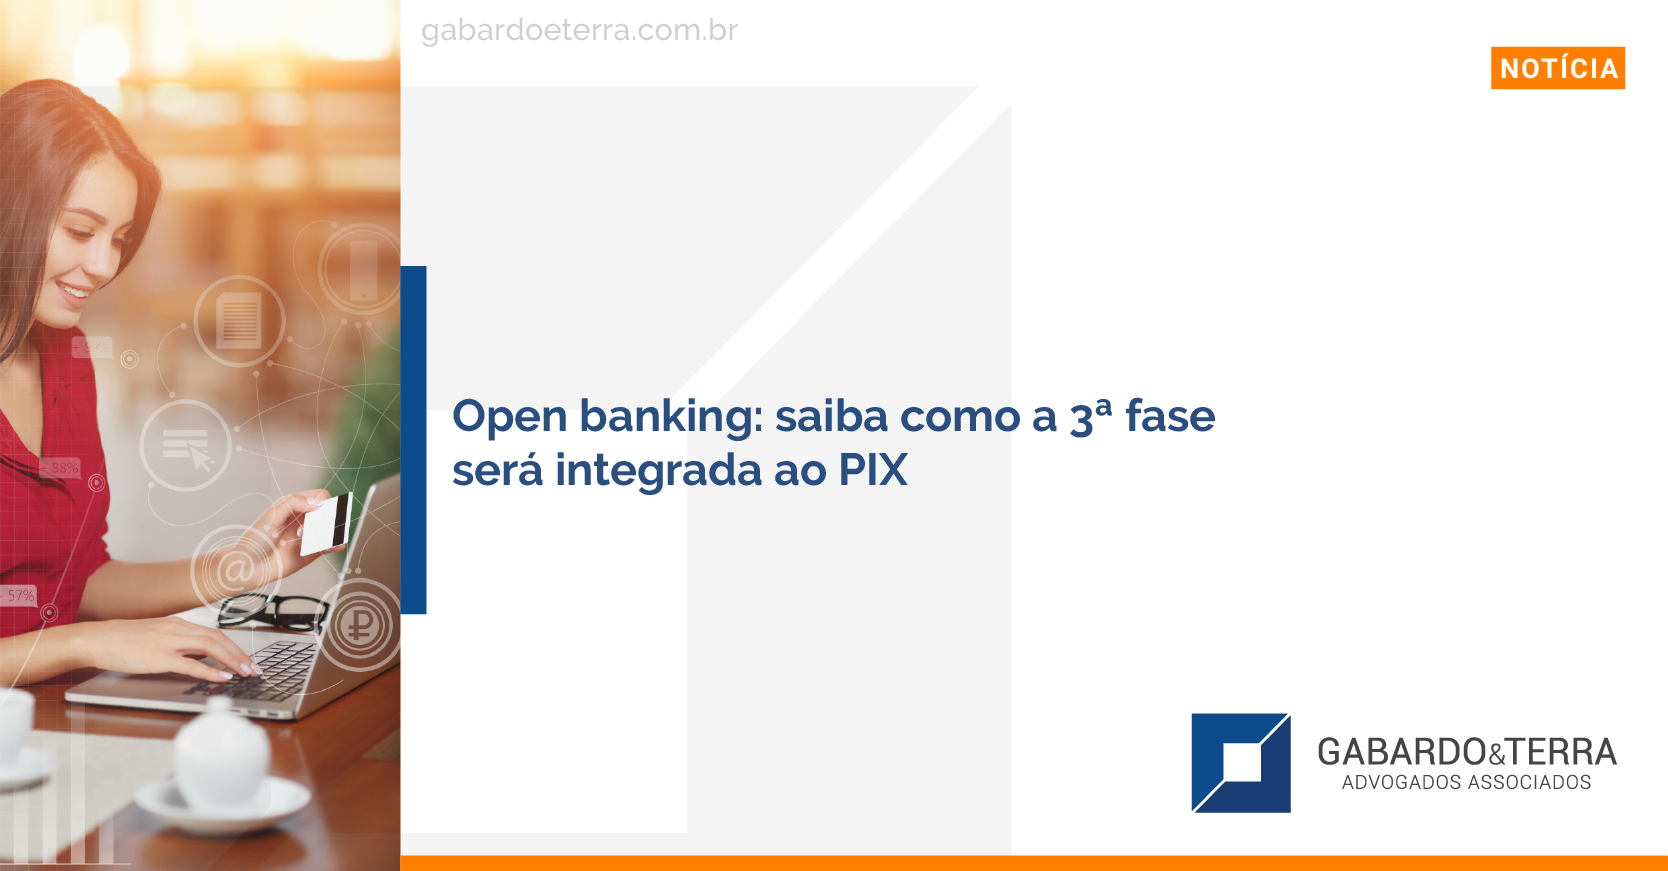 Open banking: saiba como a 3ª fase será integrada ao PIX